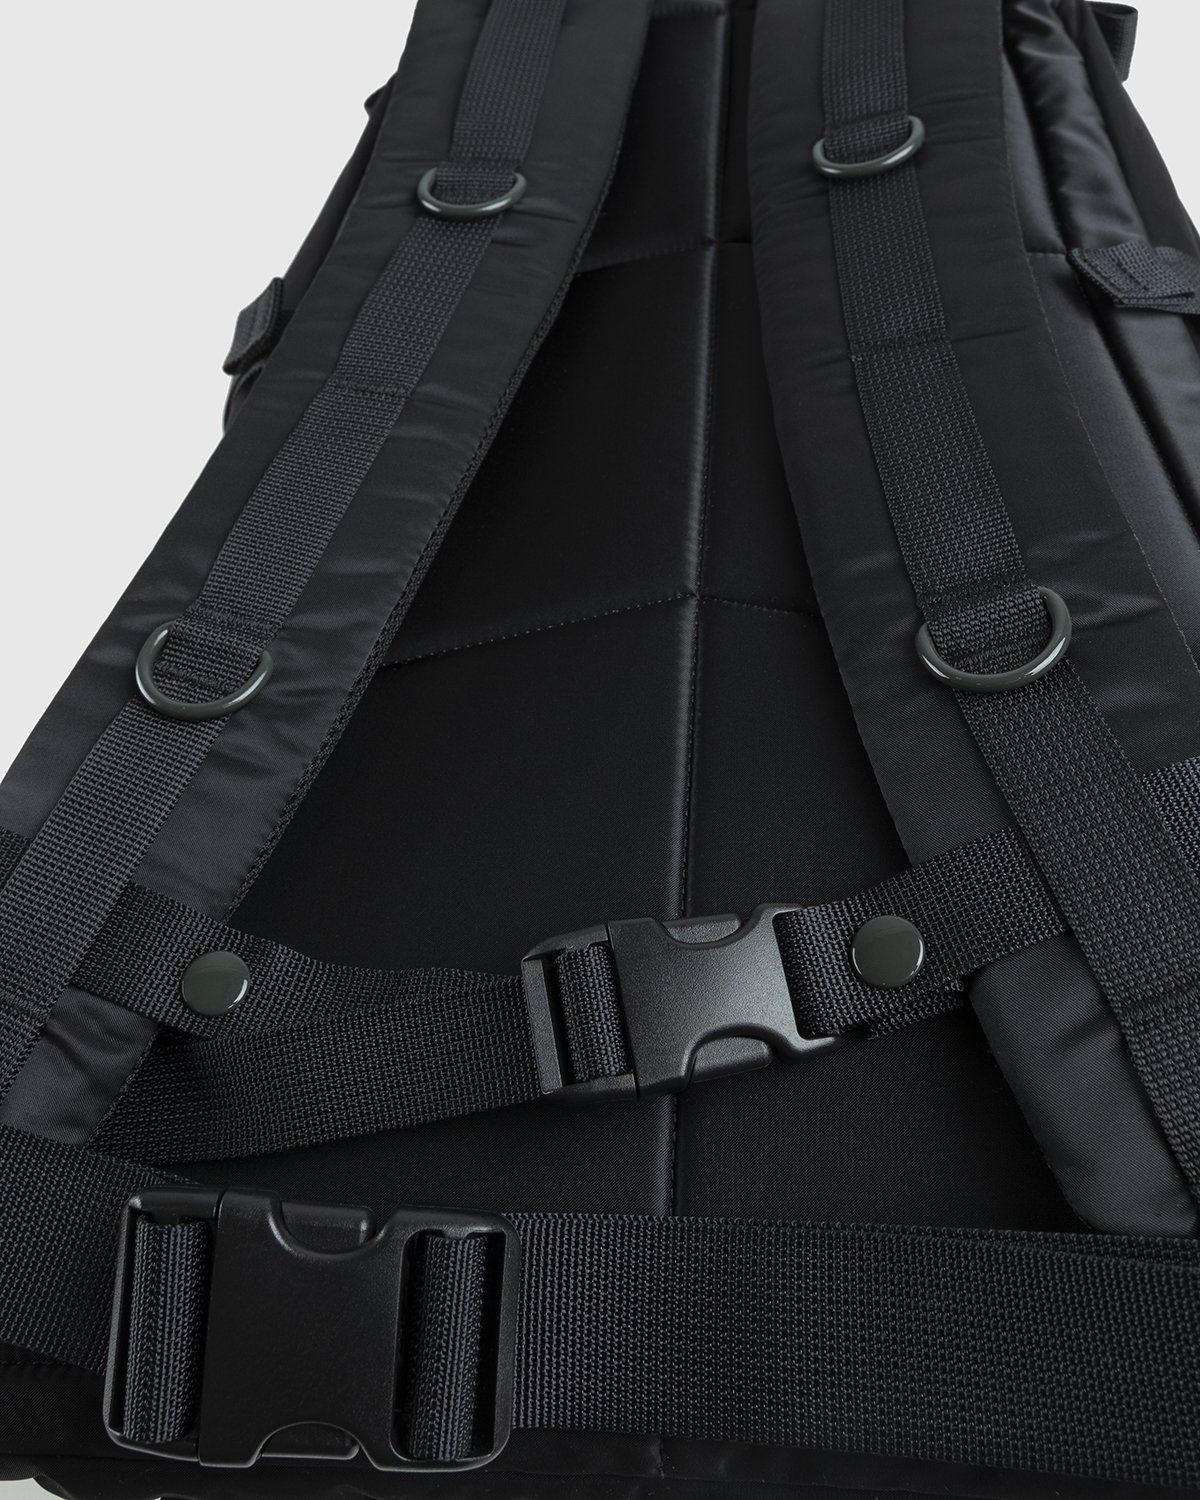 Porter-Yoshida & Co. – Tanker Padded Day Pack Black - Backpacks - Black - Image 6